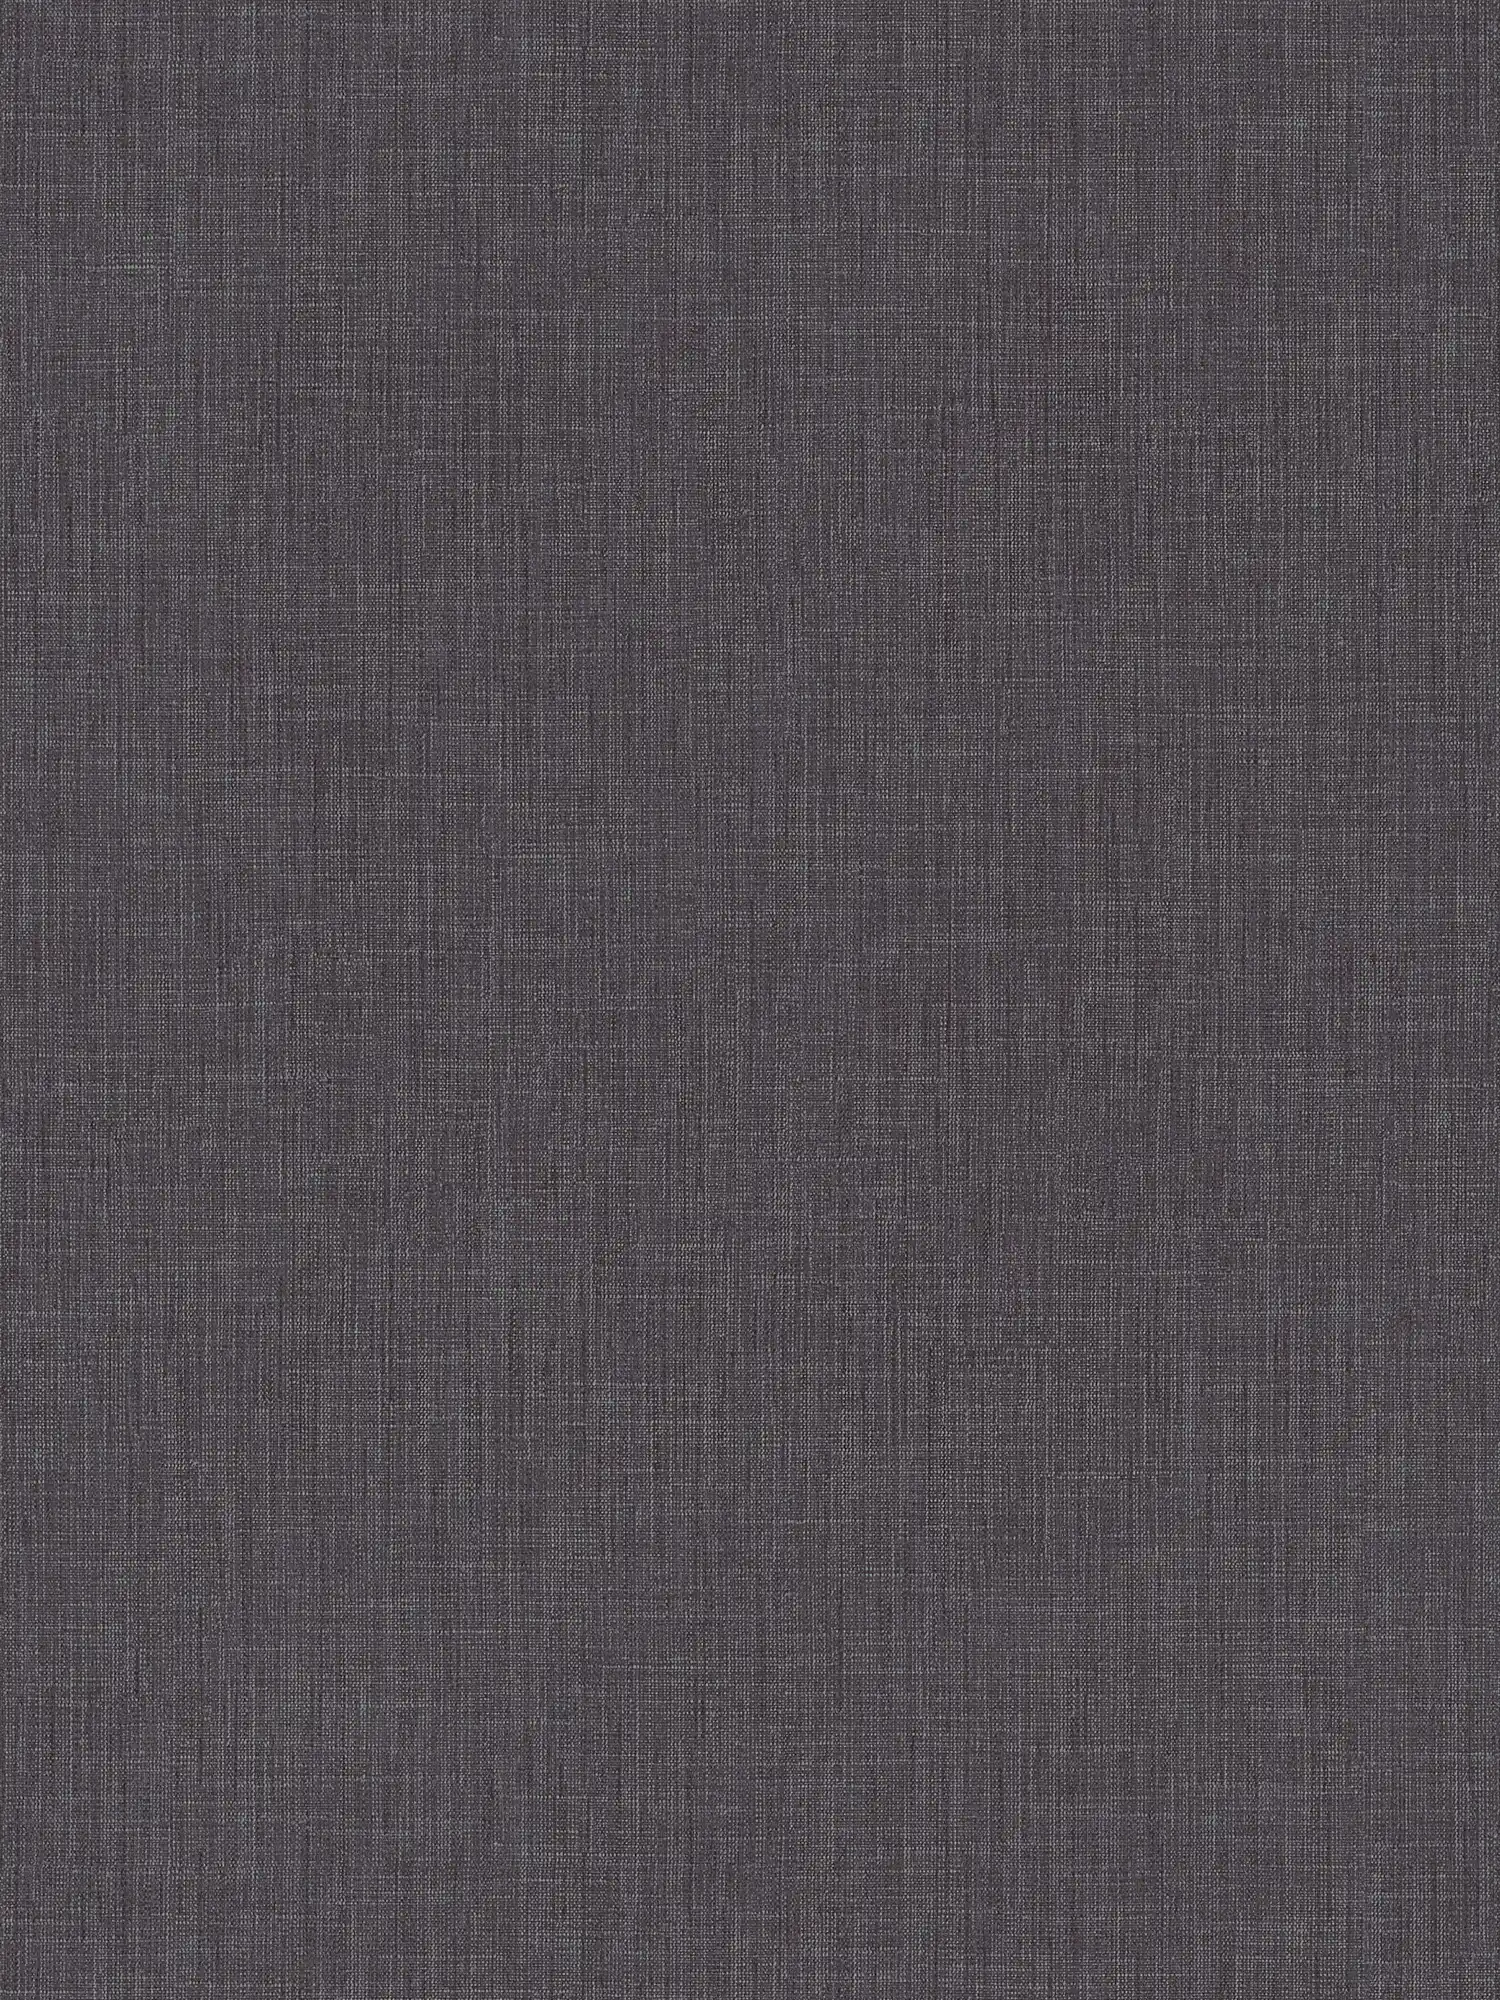 Plain wallpaper with textile structure - black
